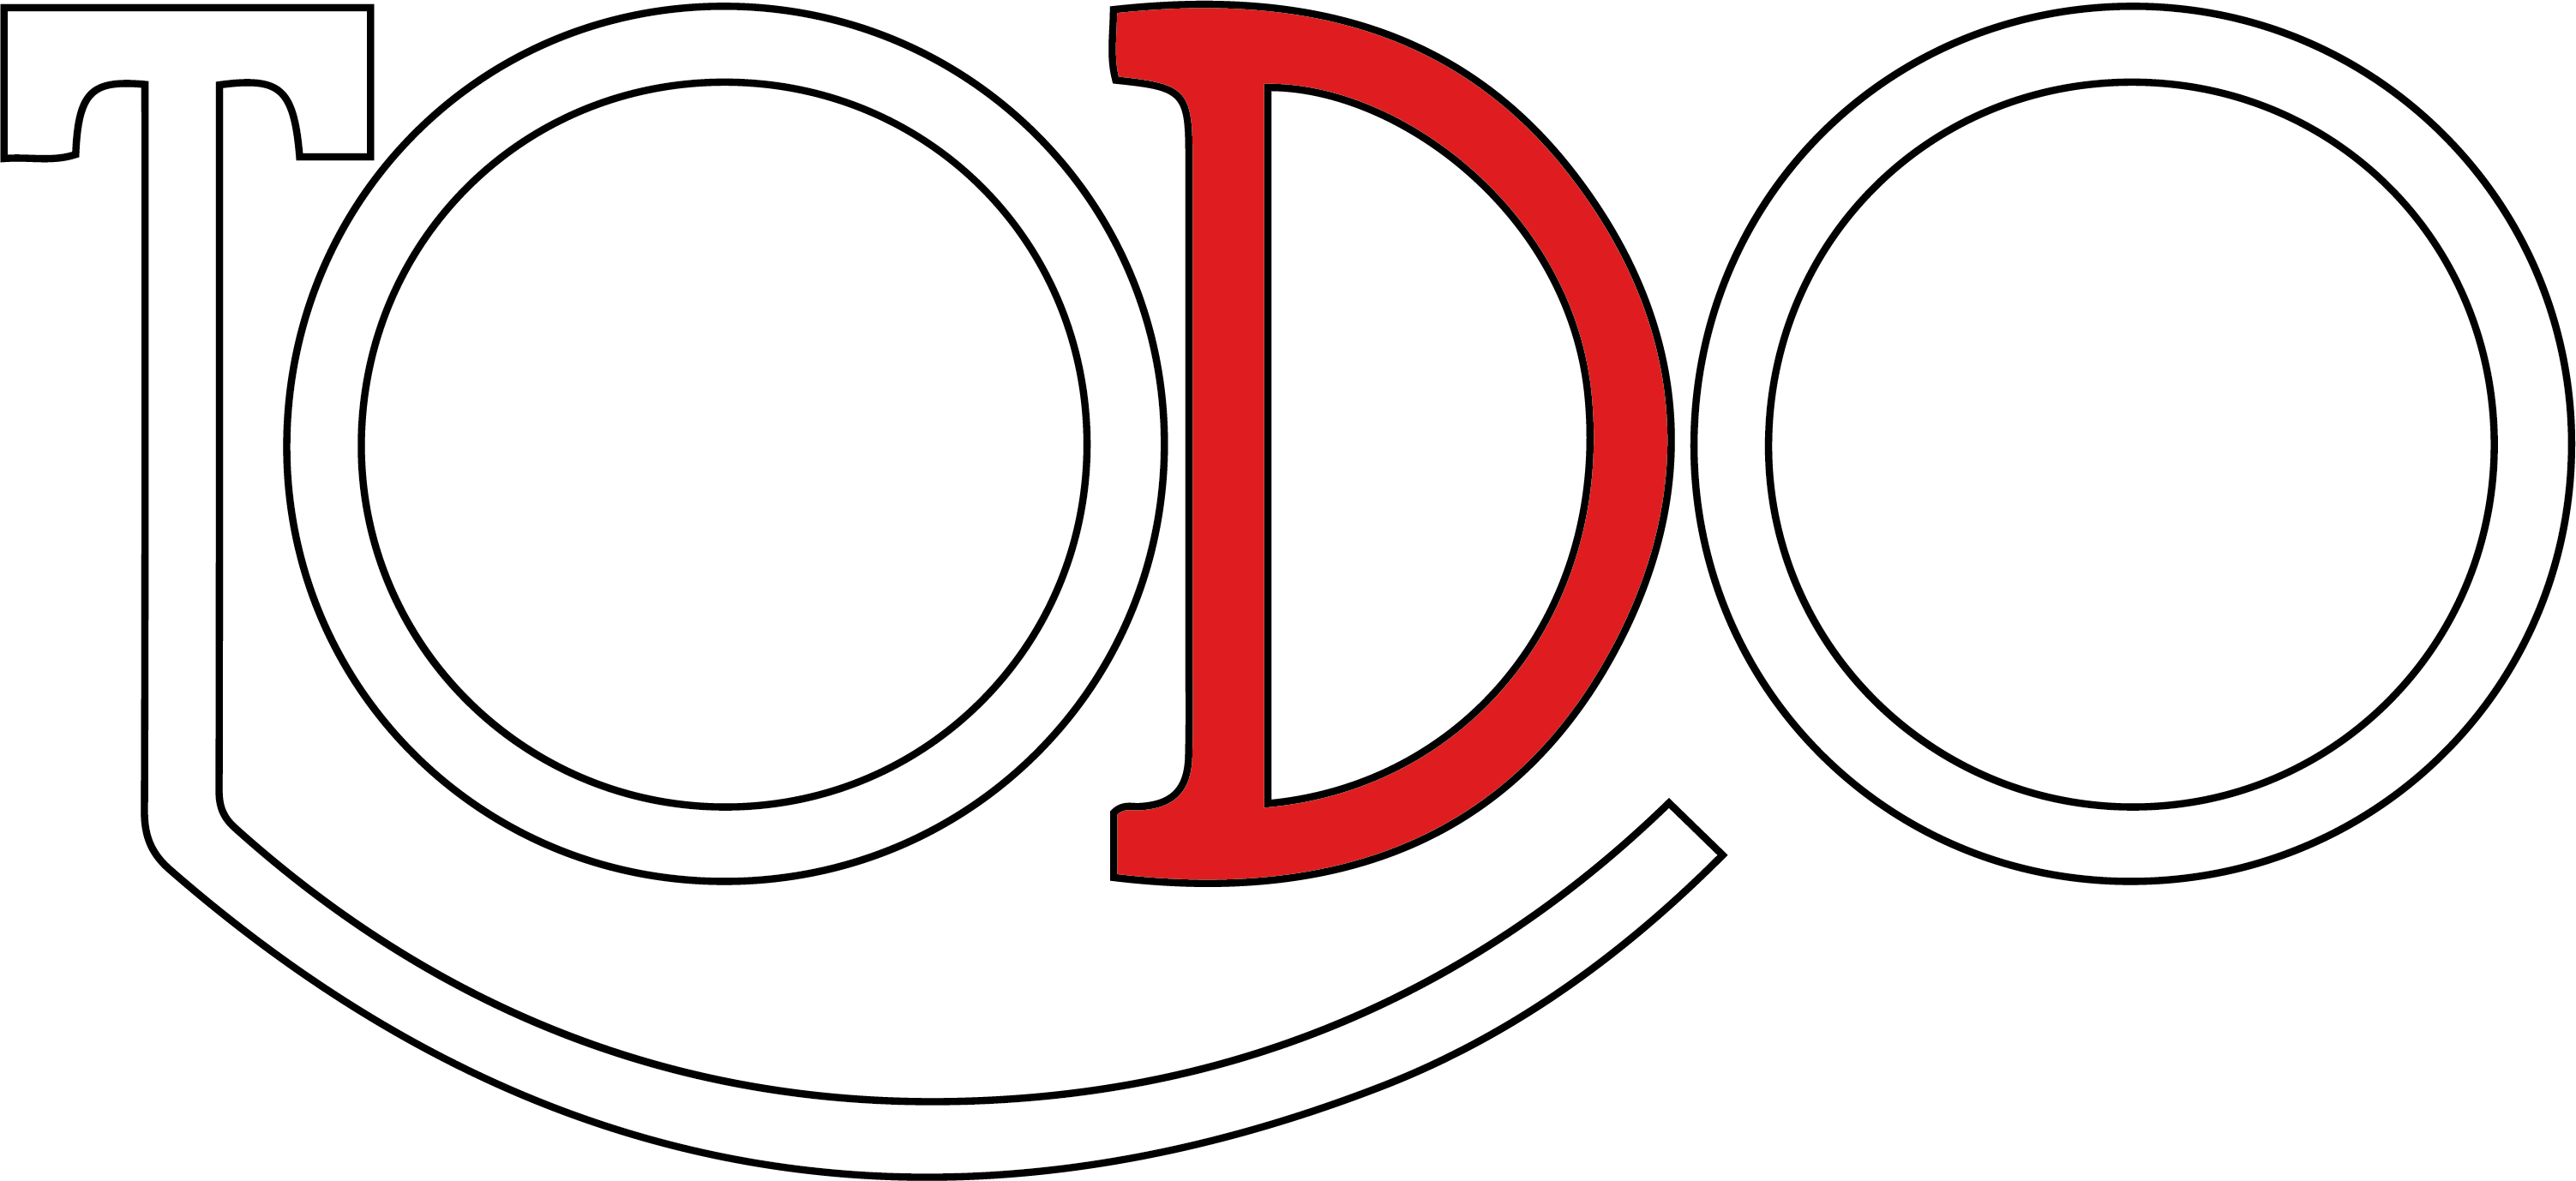 TODO logo